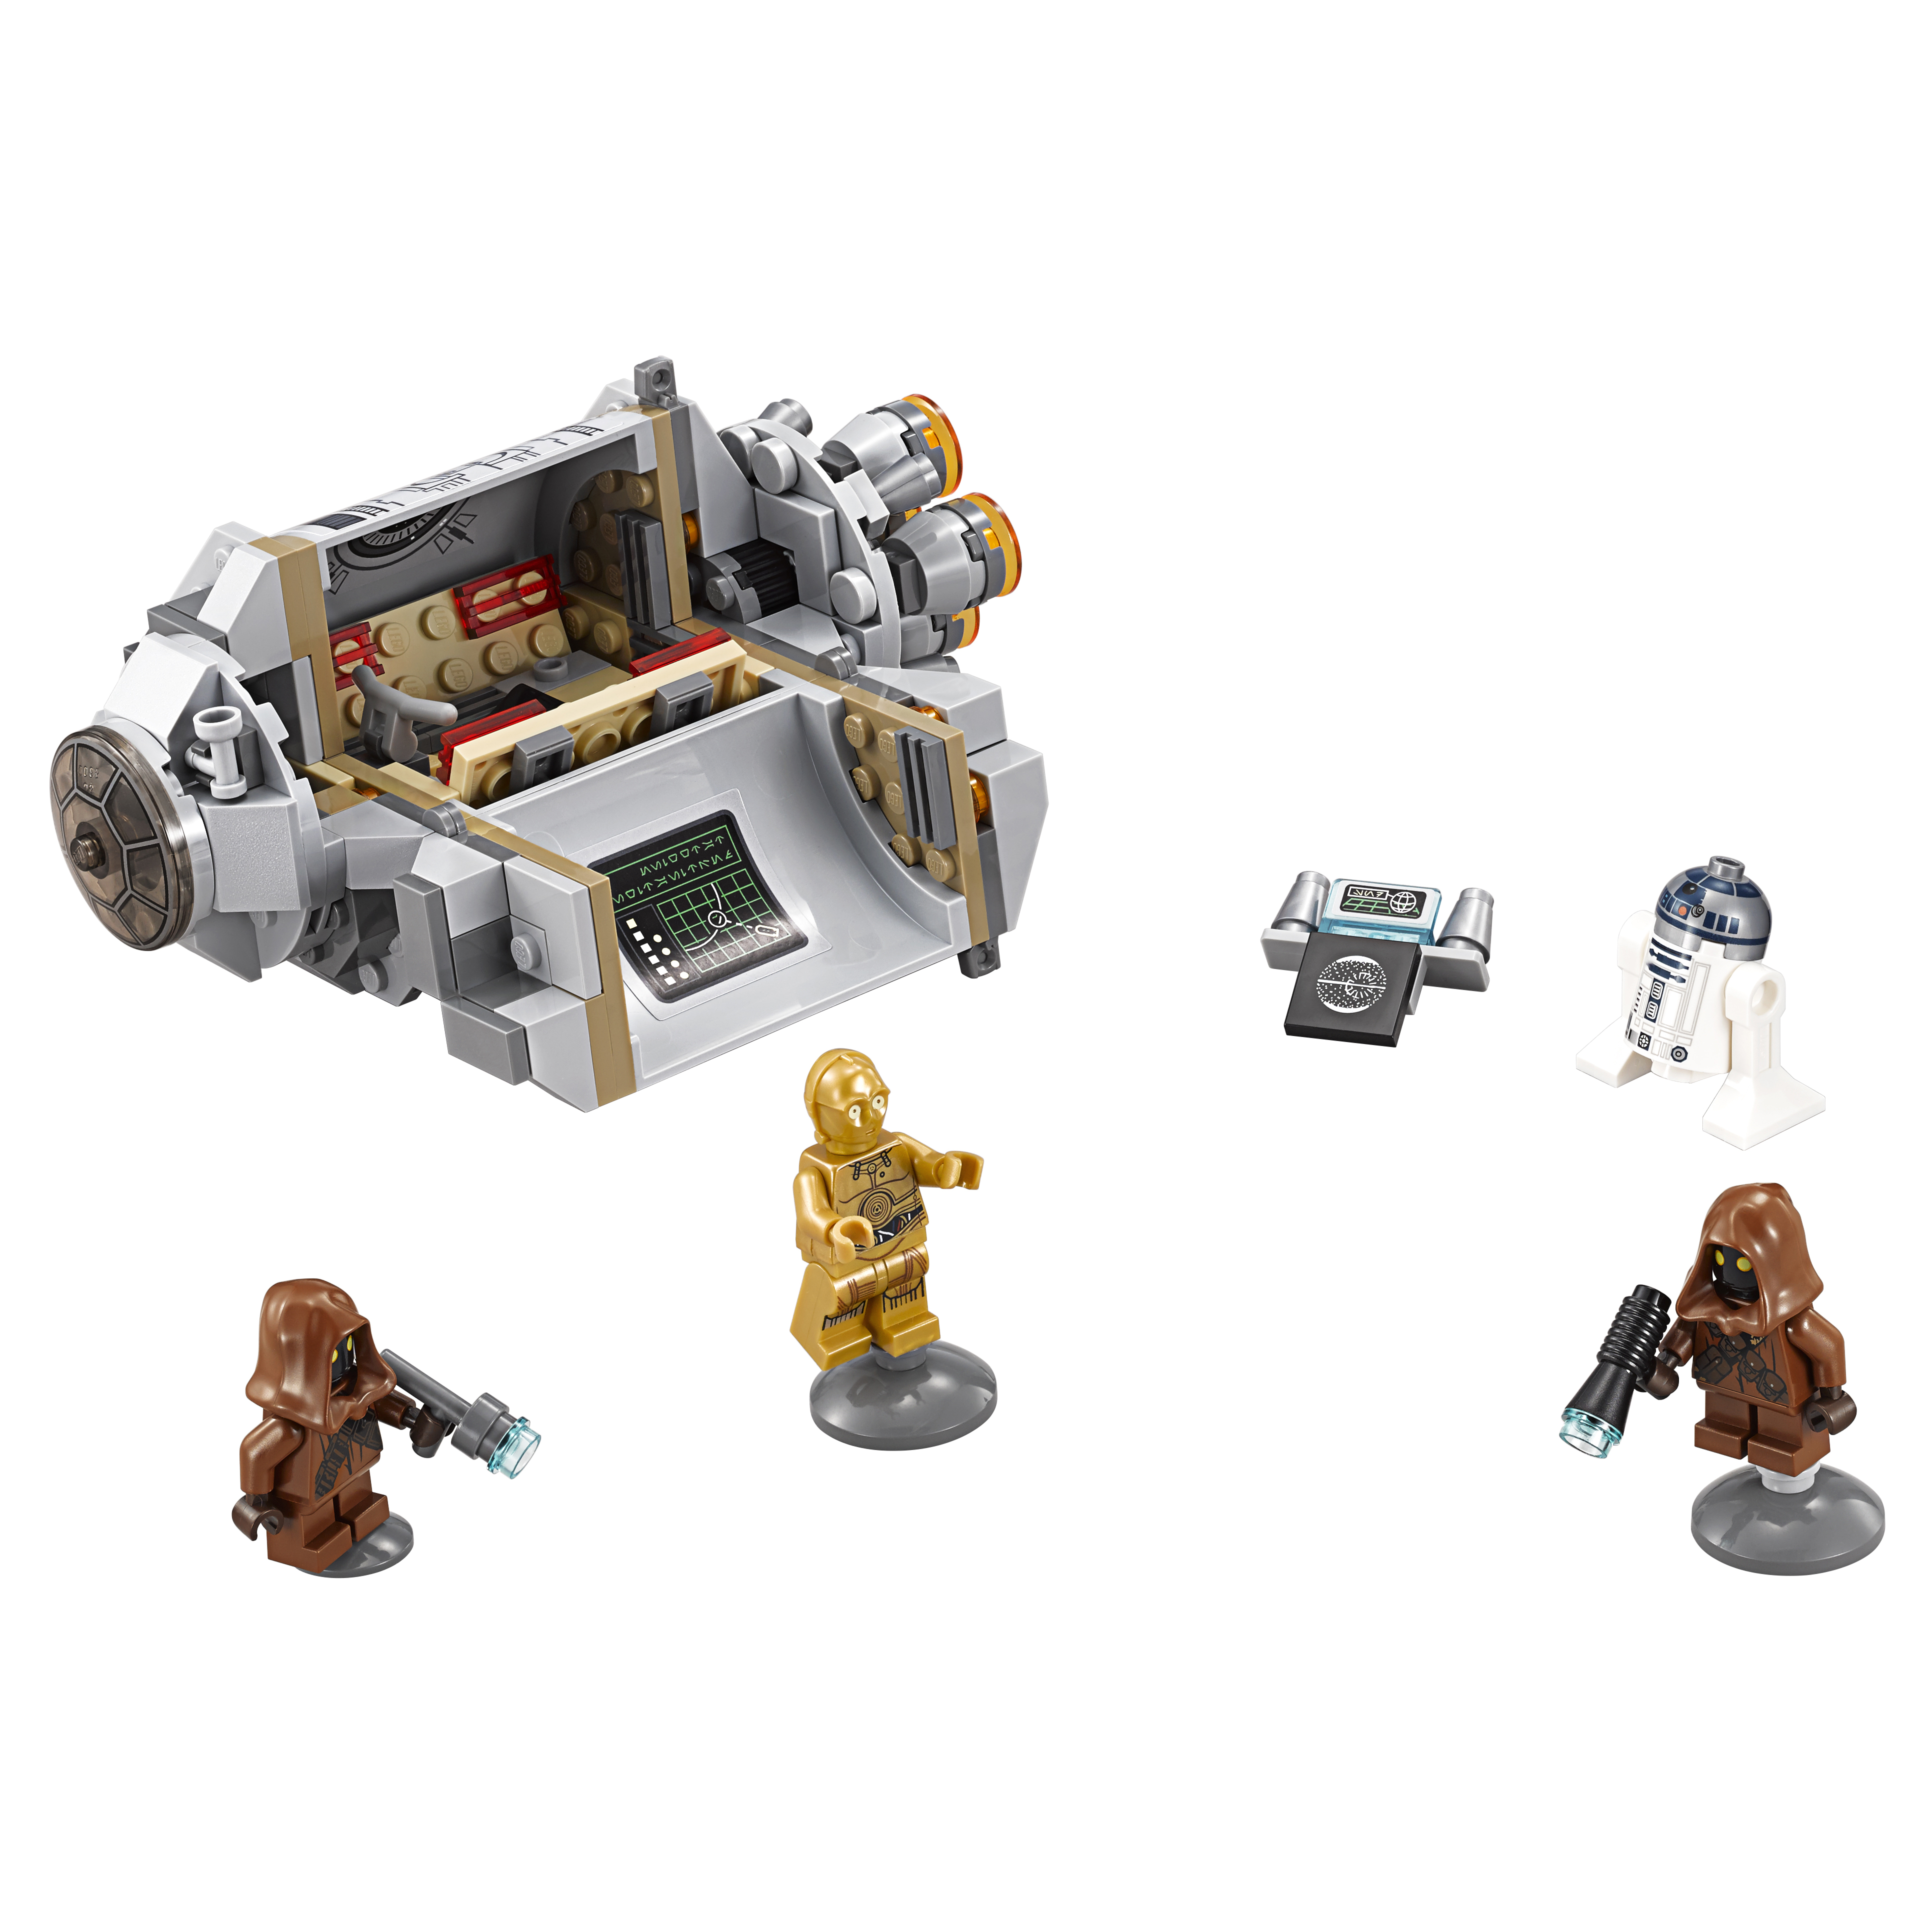 Конструктор LEGO Star Wars Спасательная капсула дроидов (75136) конструктор lego star wars спидер рей reys speeder 75099